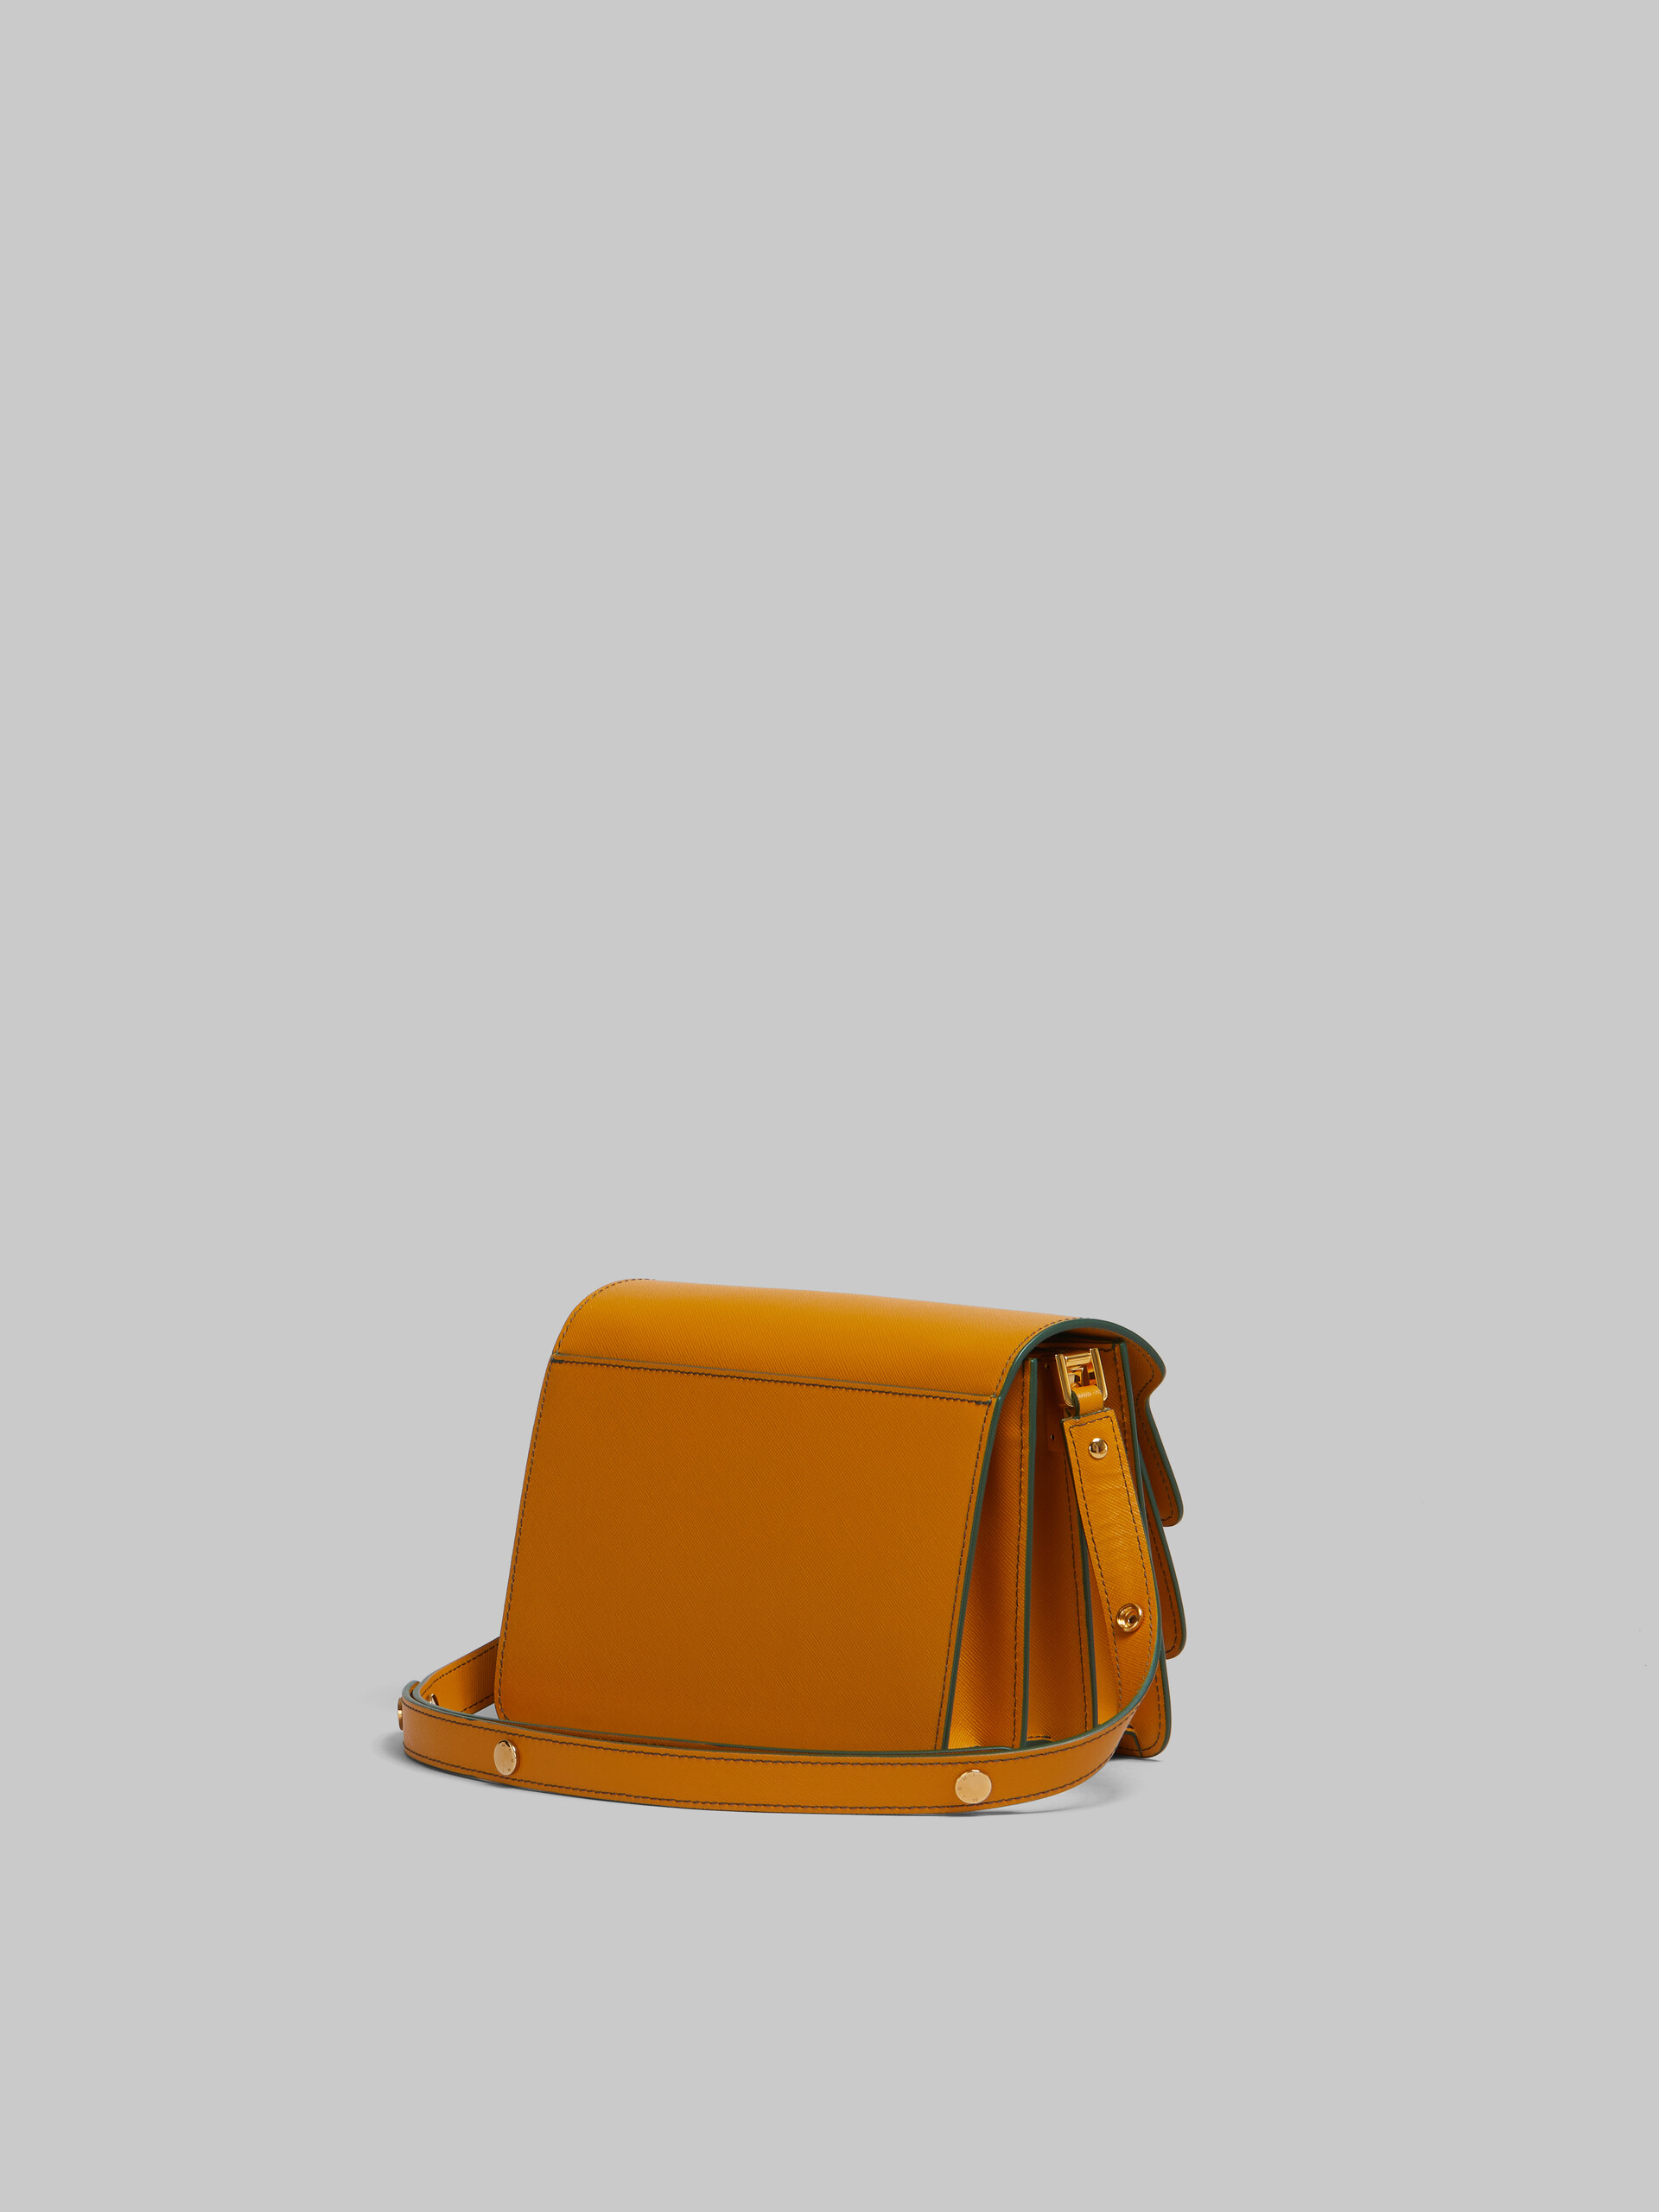 Sac Trunk de taille moyenne en cuir Saffiano beige - Sacs portés épaule - Image 3